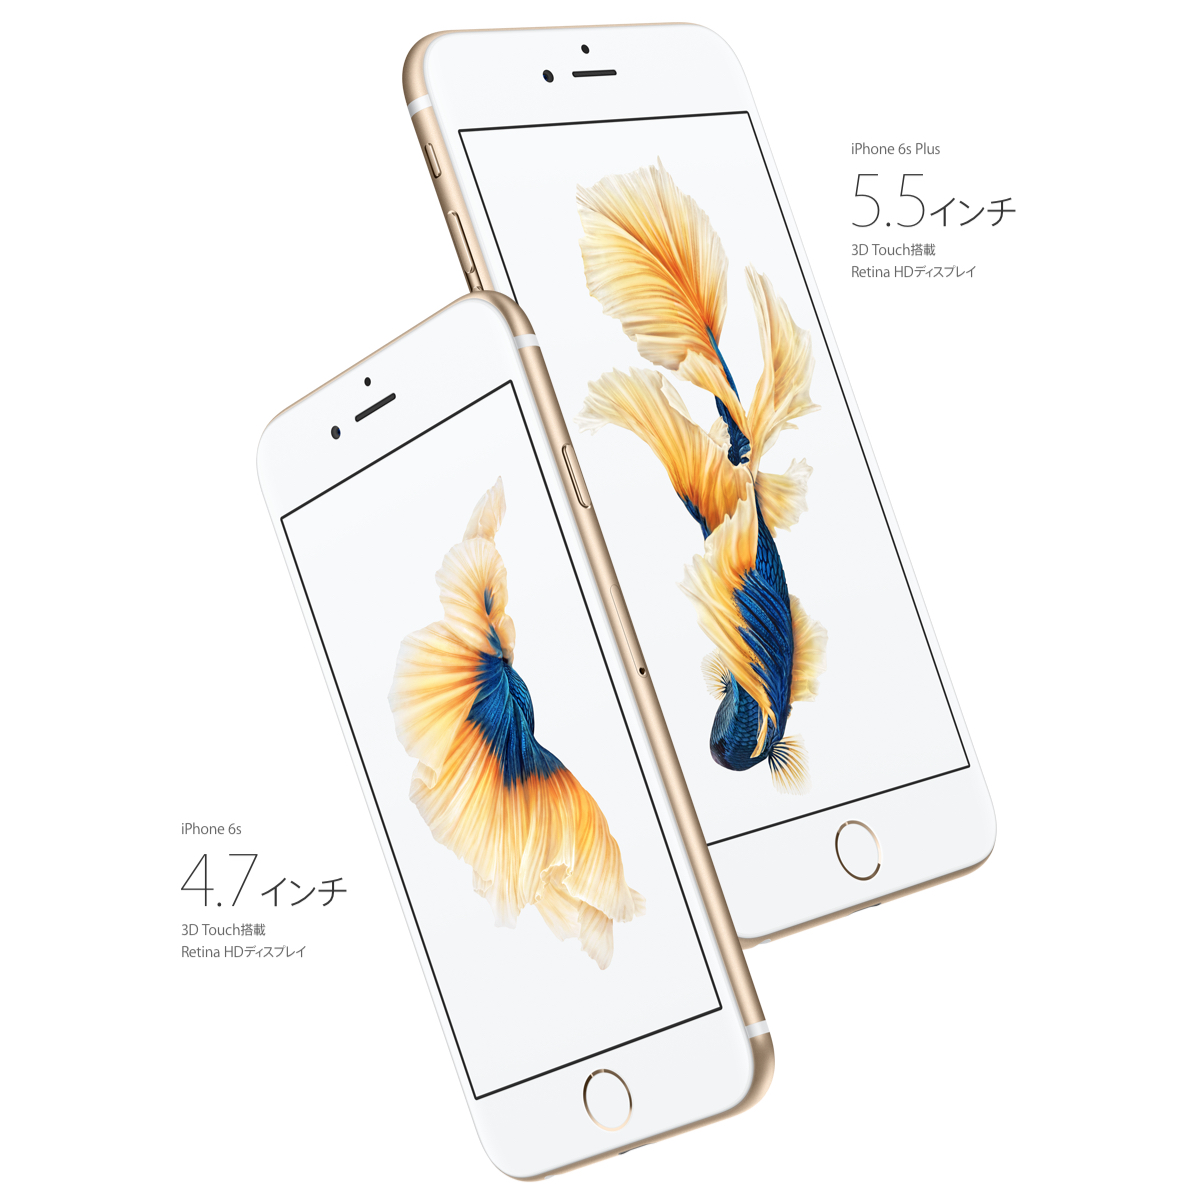 新しいiPhone 6S、iPhone 6S Plusへの対応について – AUTOPIC